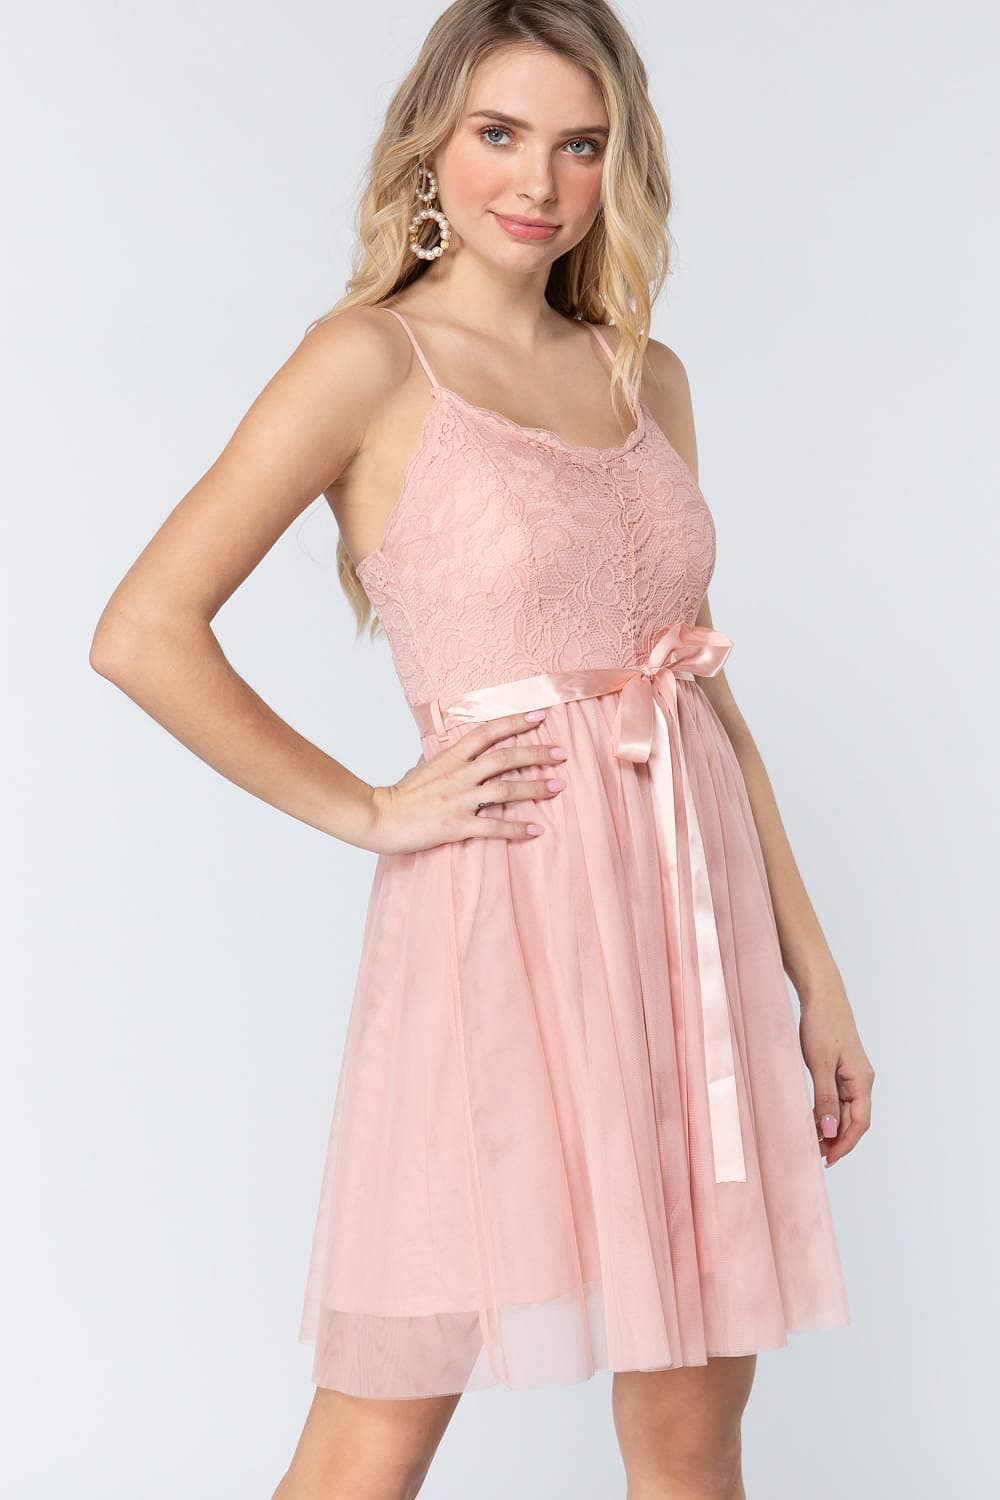 Pink Spaghetti Strap Cami Lace Mini Dress - Shopping Therapy L Apparel & Accessories